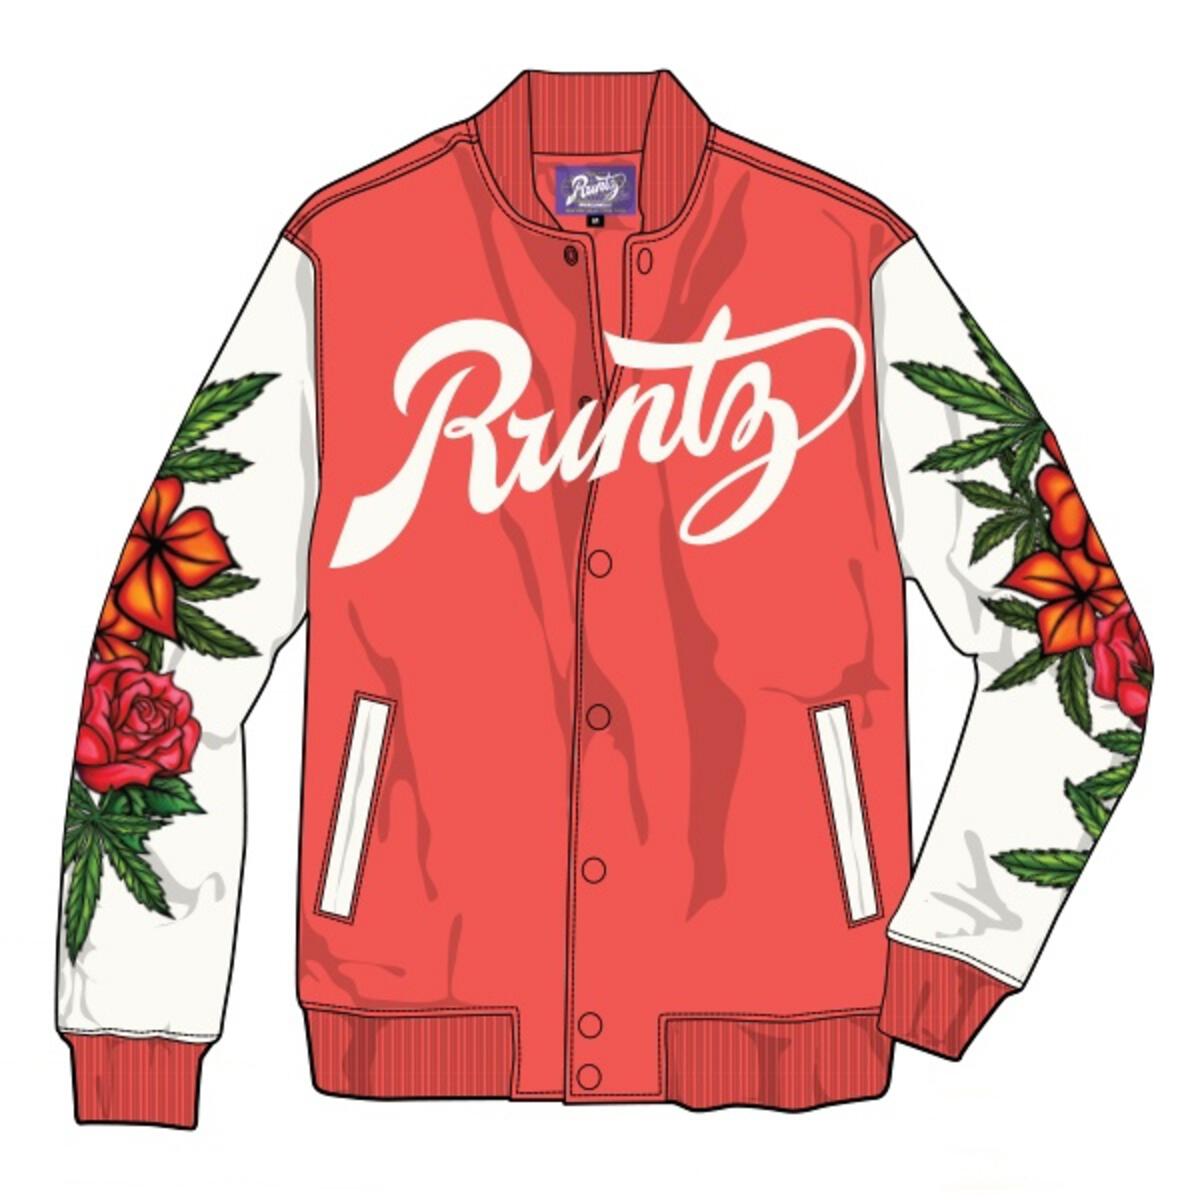 Runtz – Todays Man Store